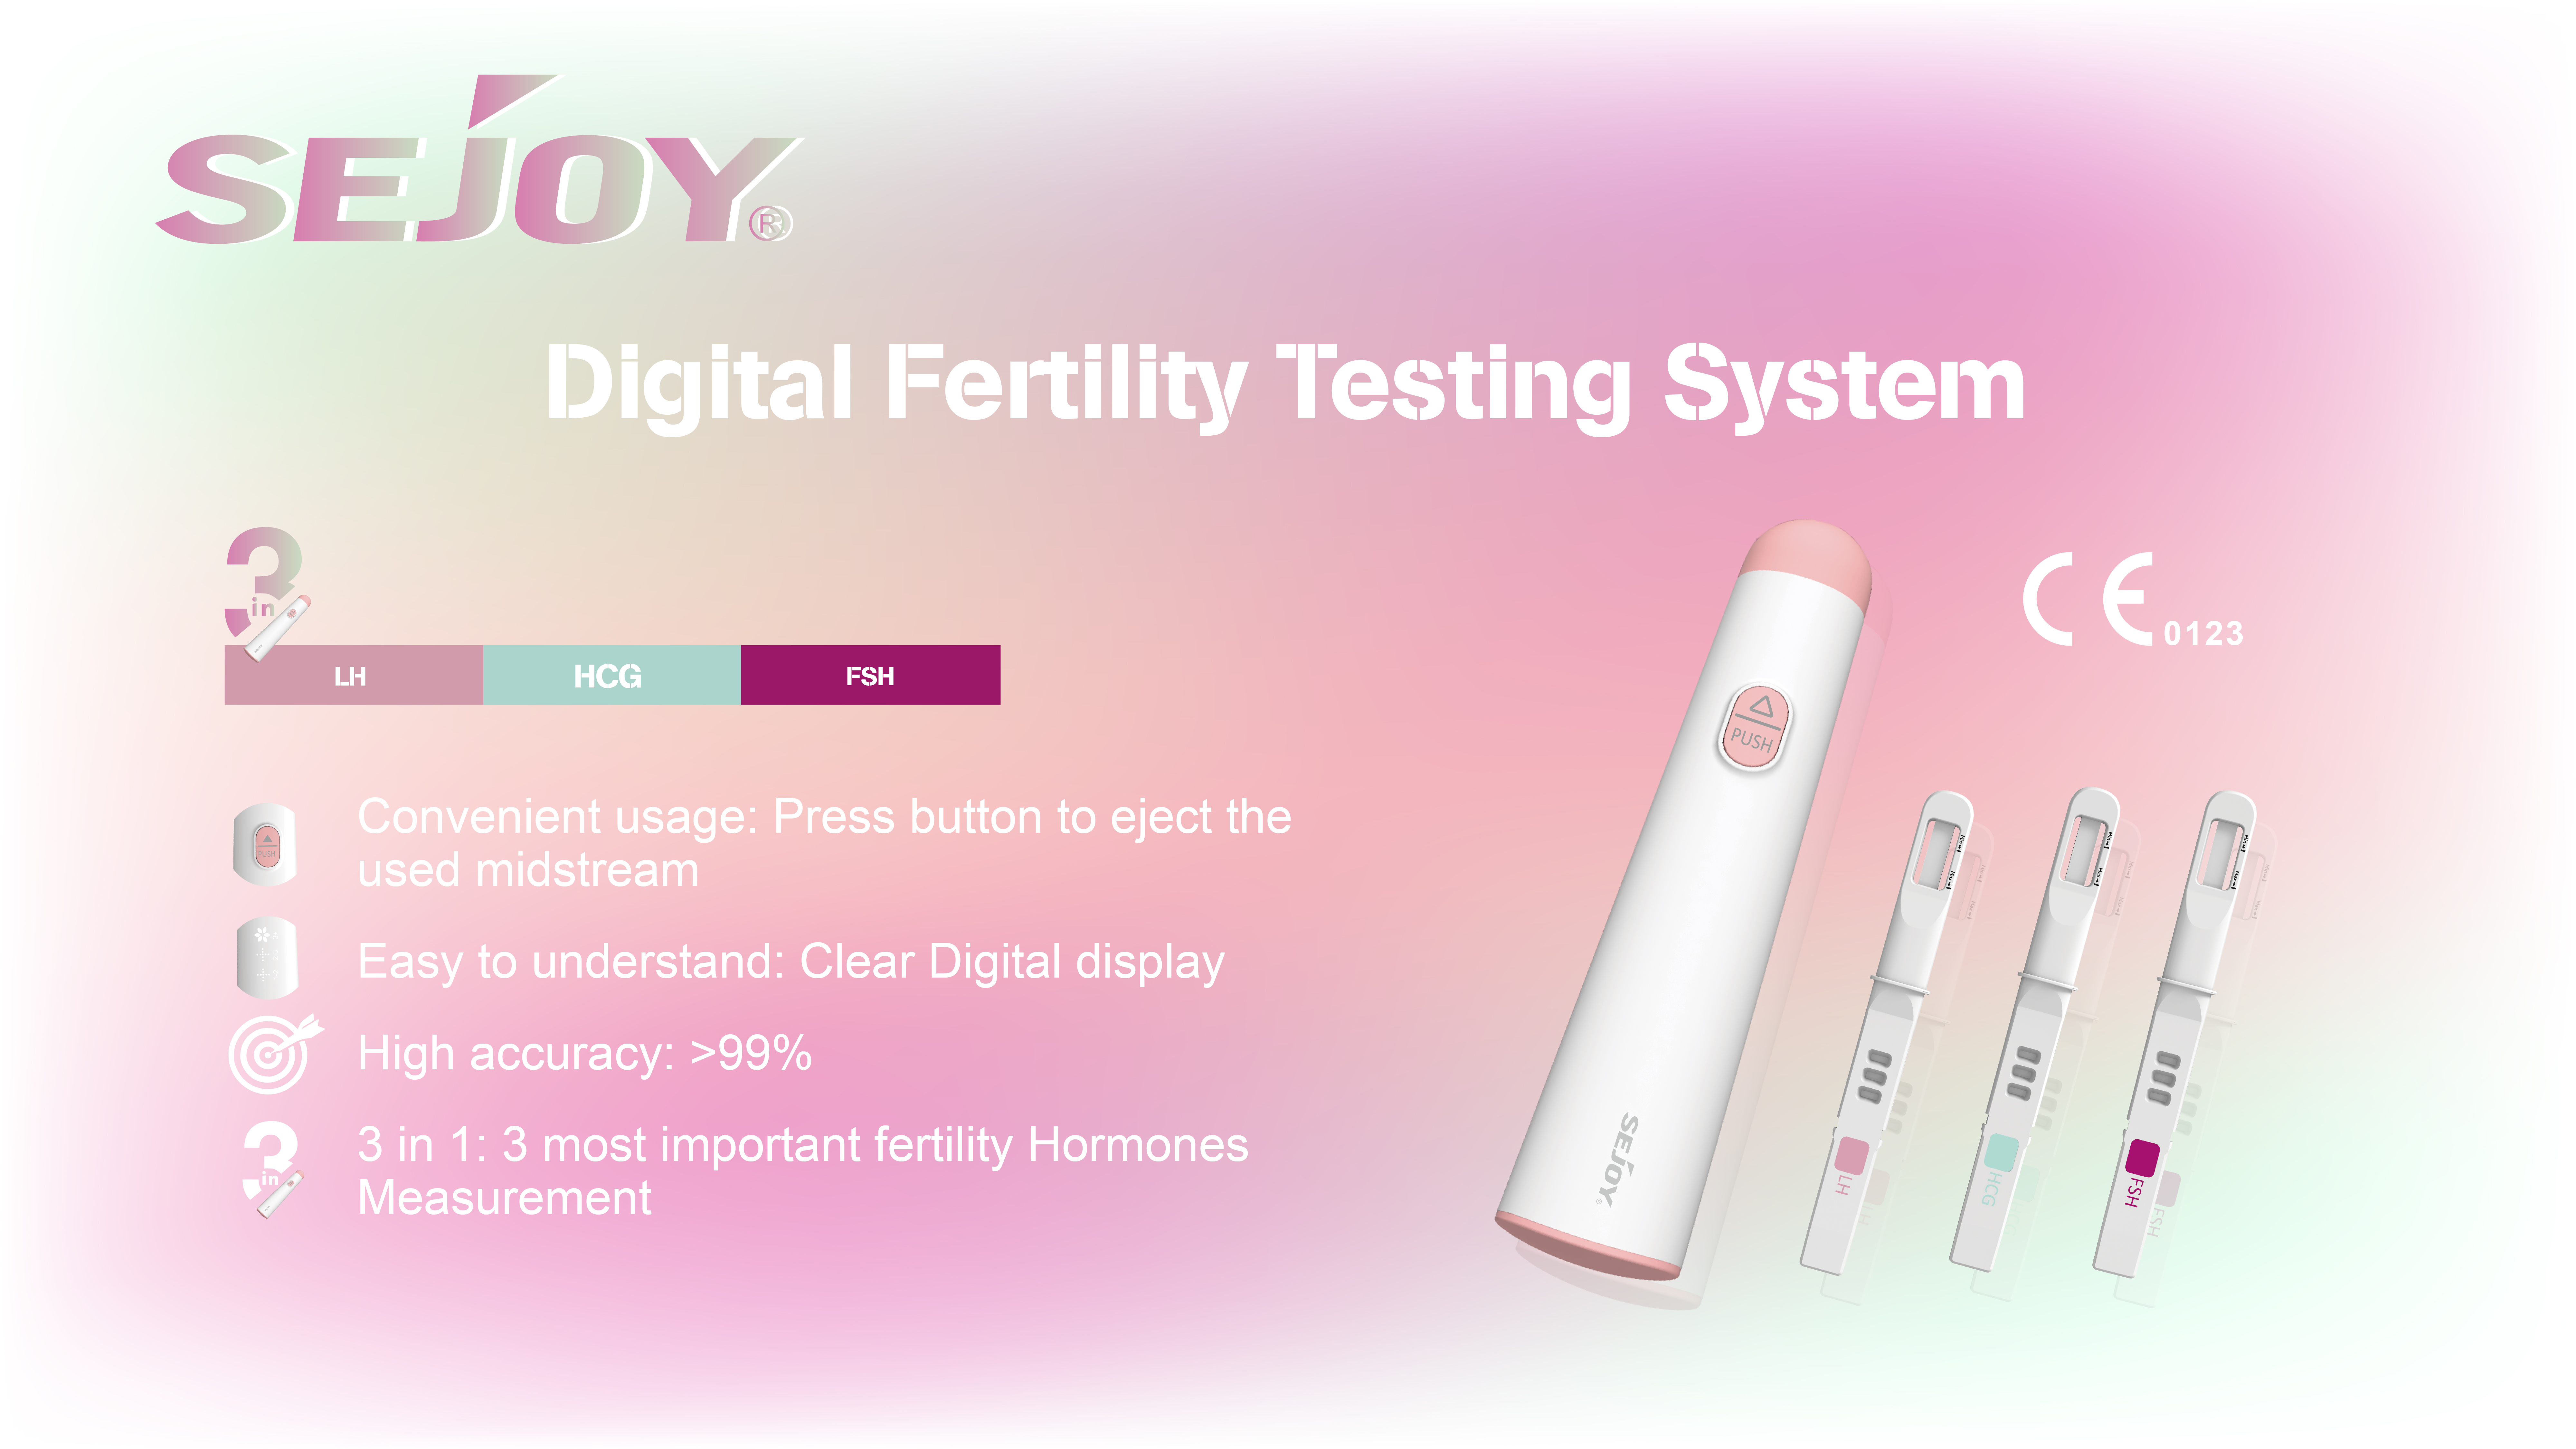 Sejoy Digital Fertility Testing System